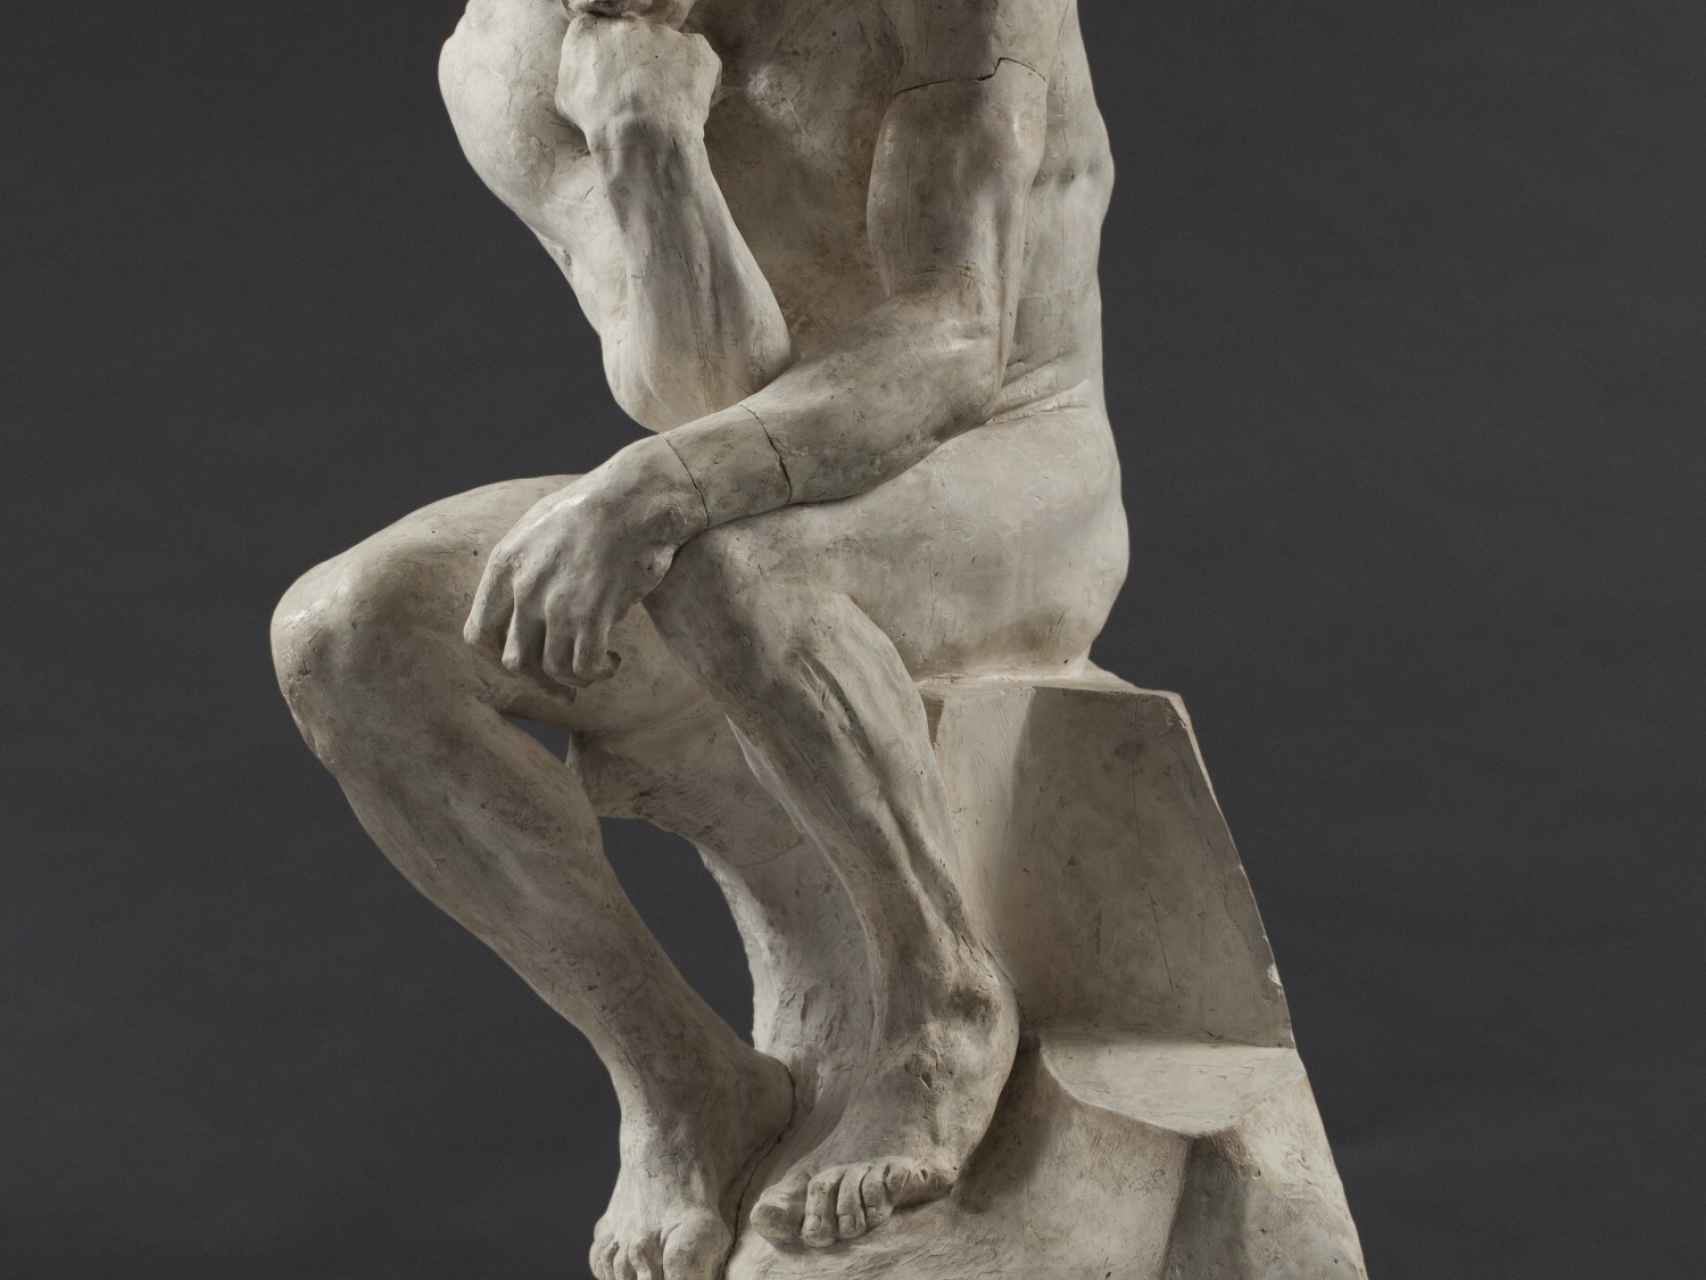 El pensador, en las Puertas del infierno, de Auguste Rodin.